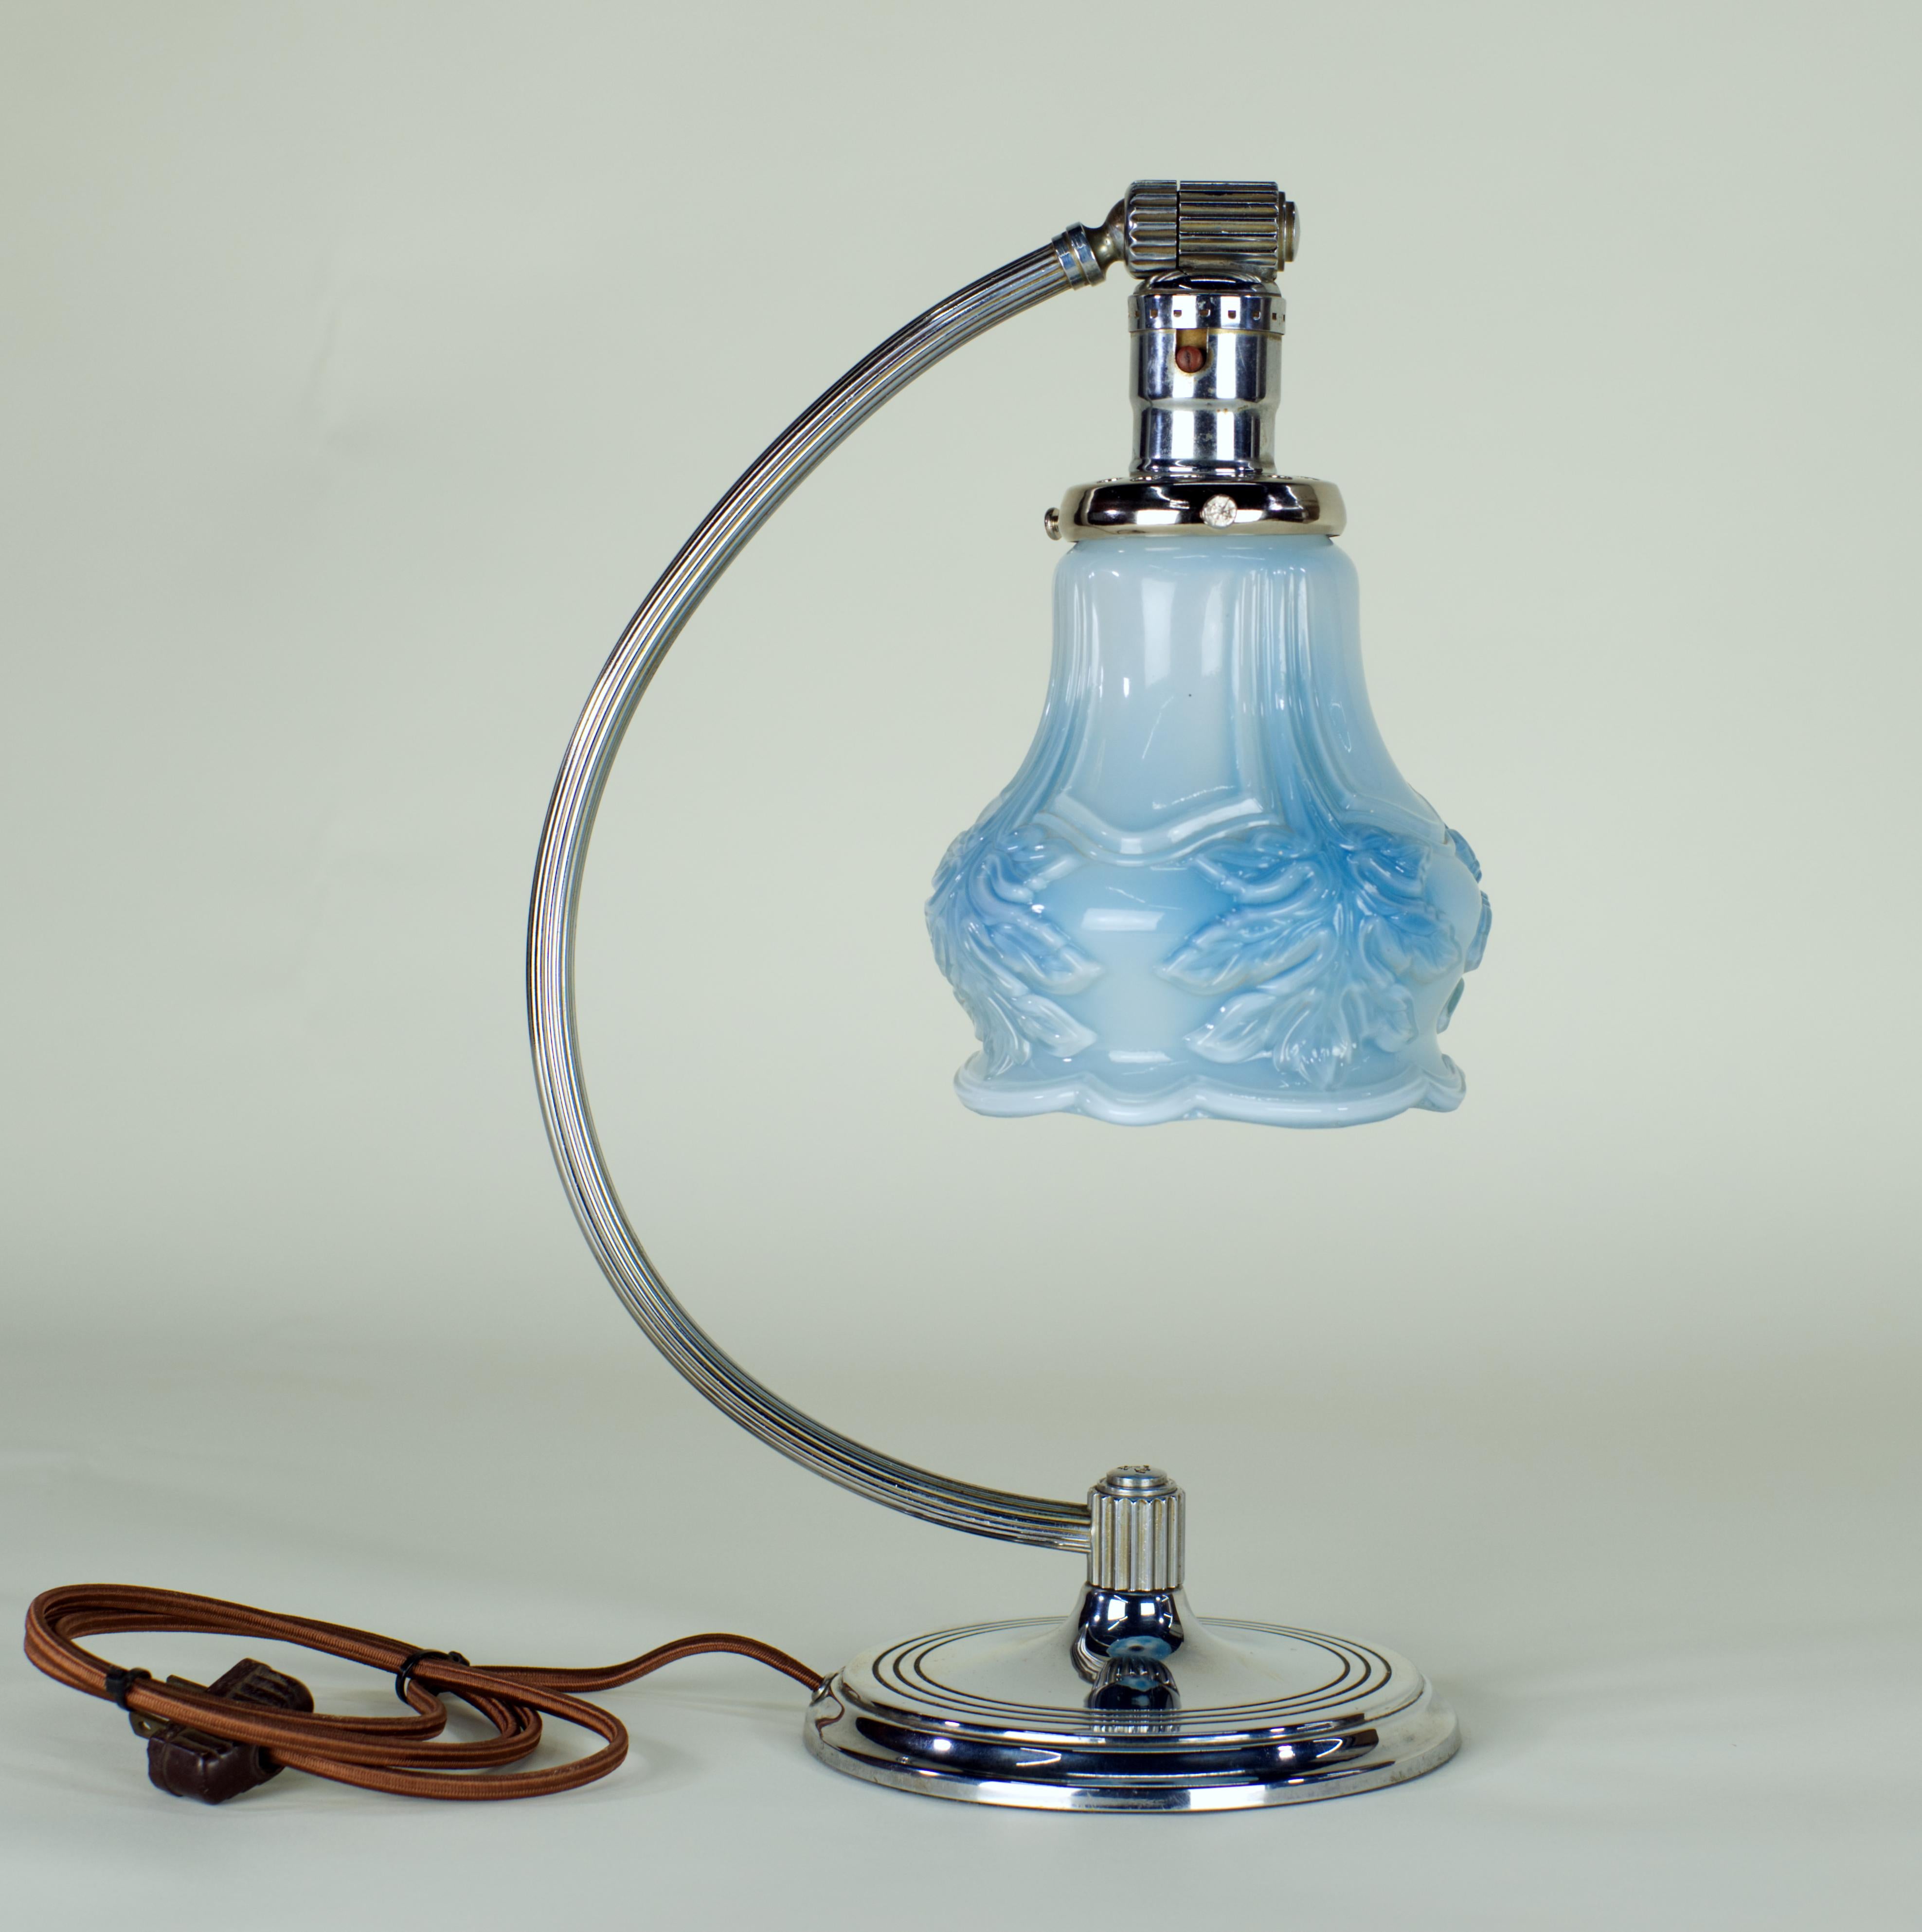 Charmante lampe de table Art déco fabriquée par The Table Company de Waterbury, Connecticut. La ligne Art déco a été produite par Chase jusque dans les années 1940, puis la société s'est tournée vers la production d'articles de guerre.
Le chromage